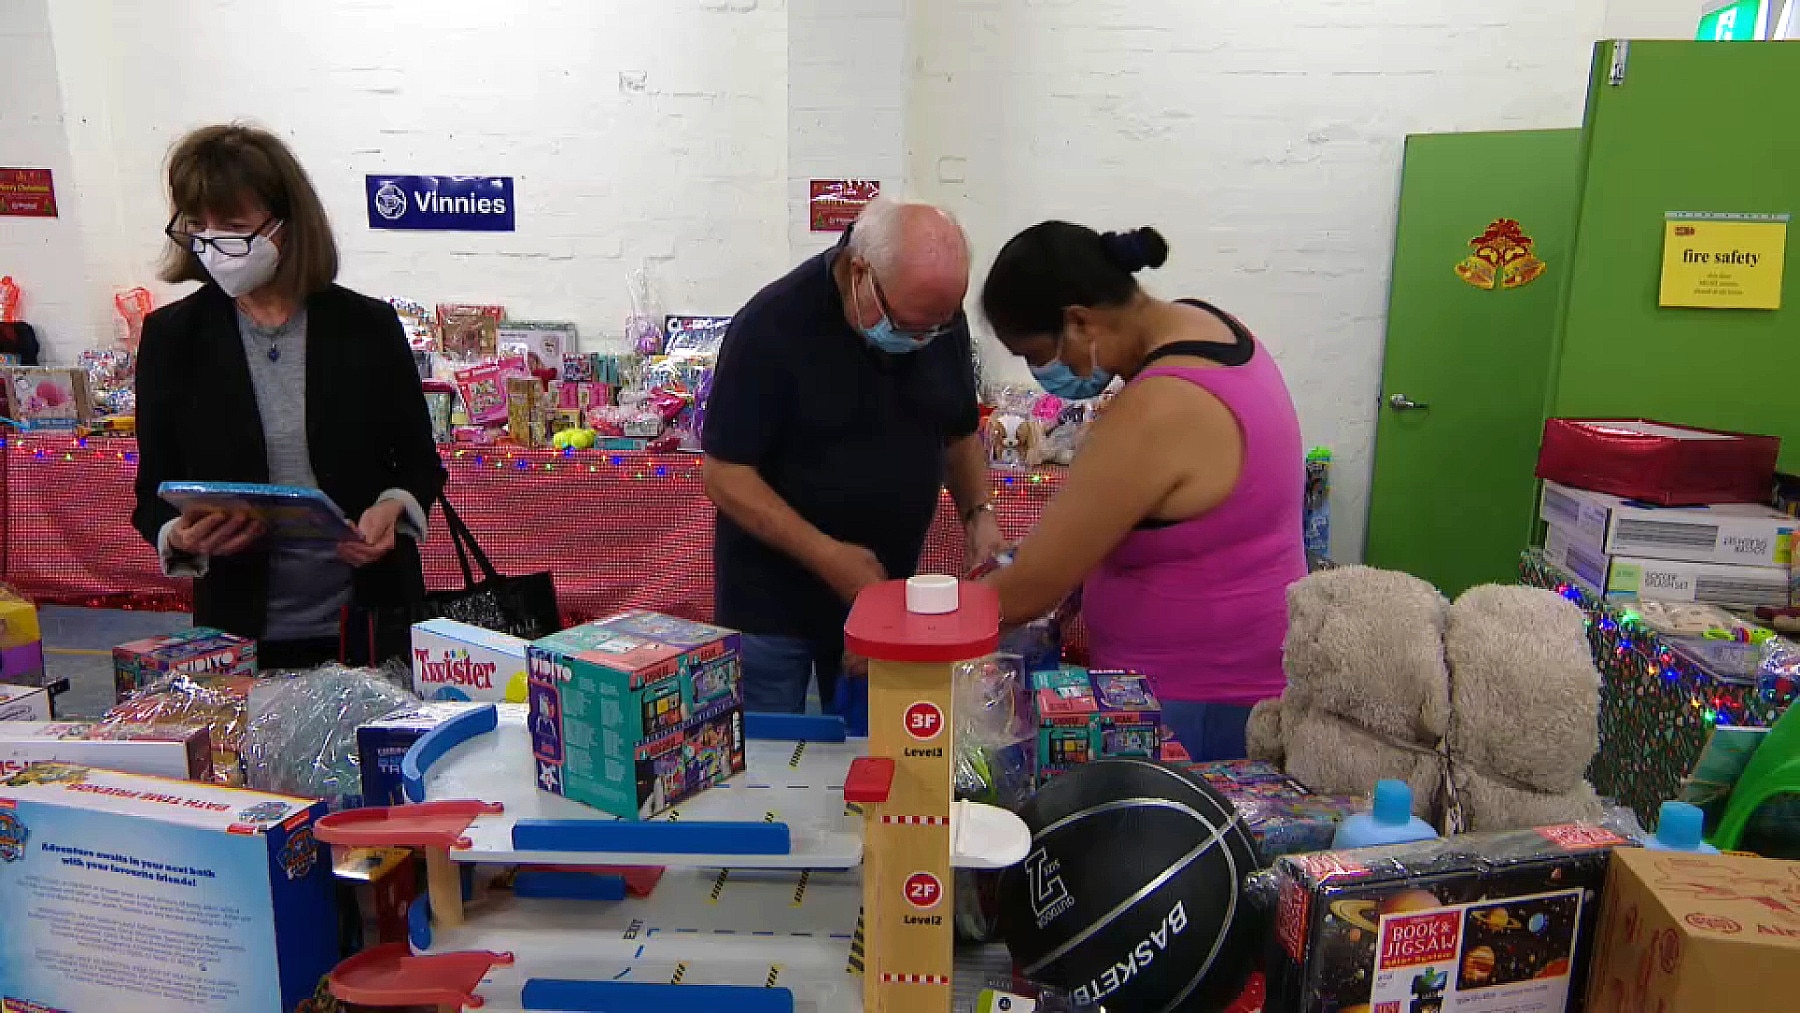 Vinnies volunteers working on Christmas gifts (SBS)